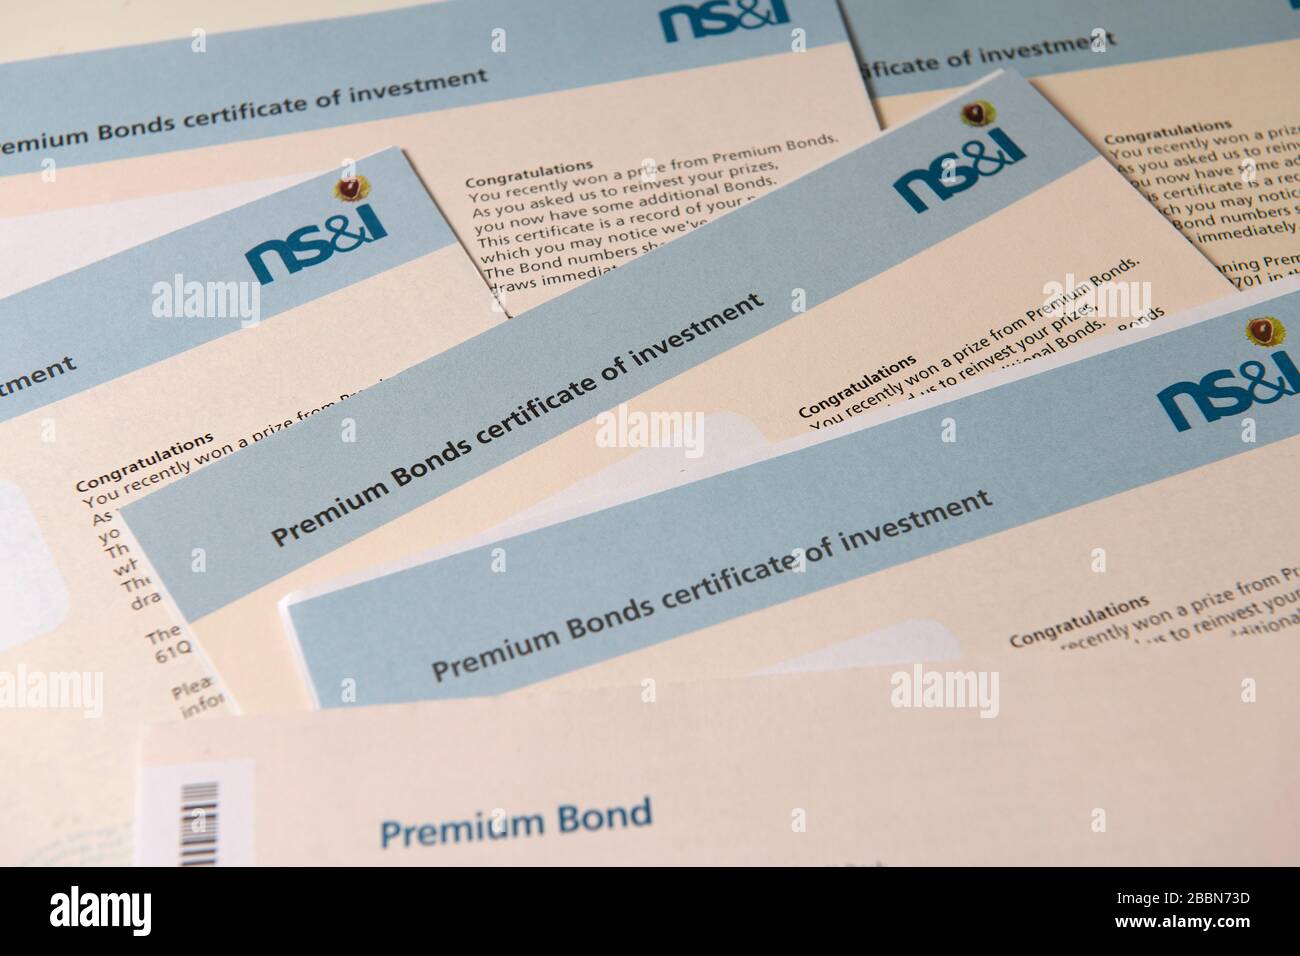 Bonos Premium ganadores certificados de reinversión de NS&I, Reino Unido Foto de stock